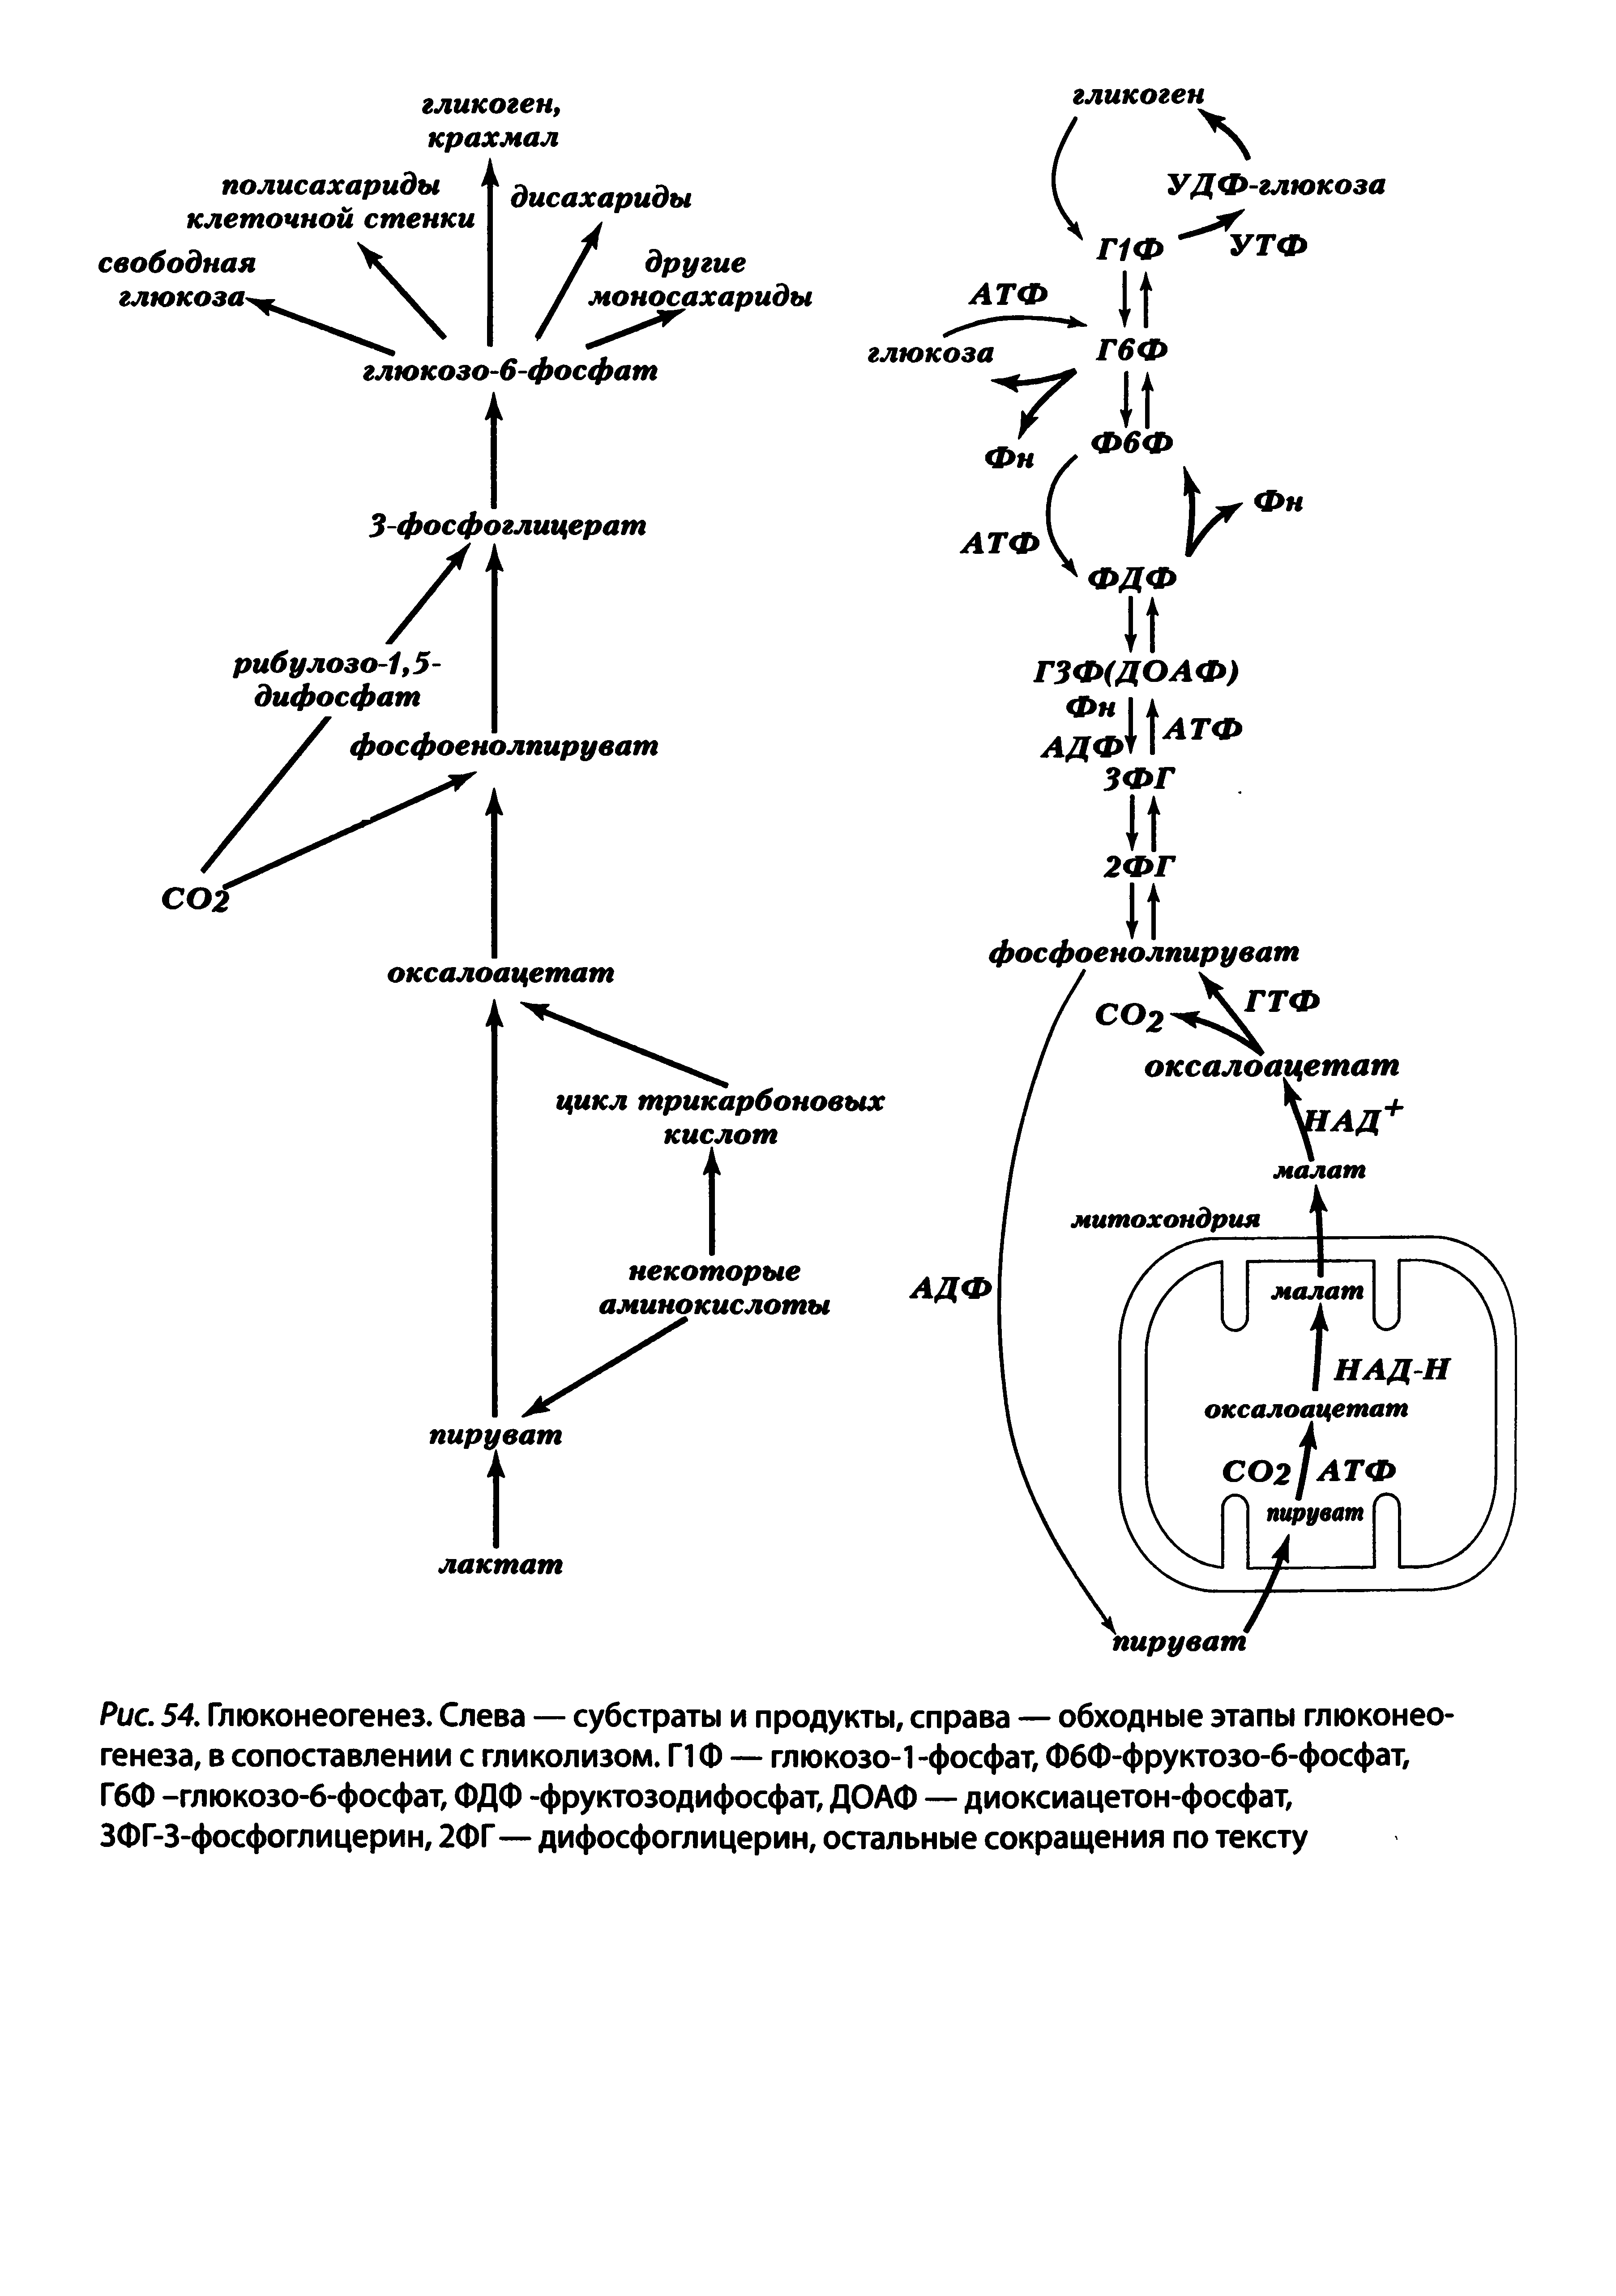 Рис. 54. Глюконеогенез. Слева — субстраты и продукты, справа — обходные этапы глюконеогенеза, в сопоставлении с гликолизом. Г1Ф — глюкозо-1 -фосфат, ФбФ-фруктозо-6-фосфат, Г6Ф -глюкозо-б-фосфат, ФДФ -фруктозодифосфат, ДОАФ — диоксиацетон-фосфат, ЗФГ-З-фосфоглицерин, 2ФГ — дифосфоглицерин, остальные сокращения по тексту...